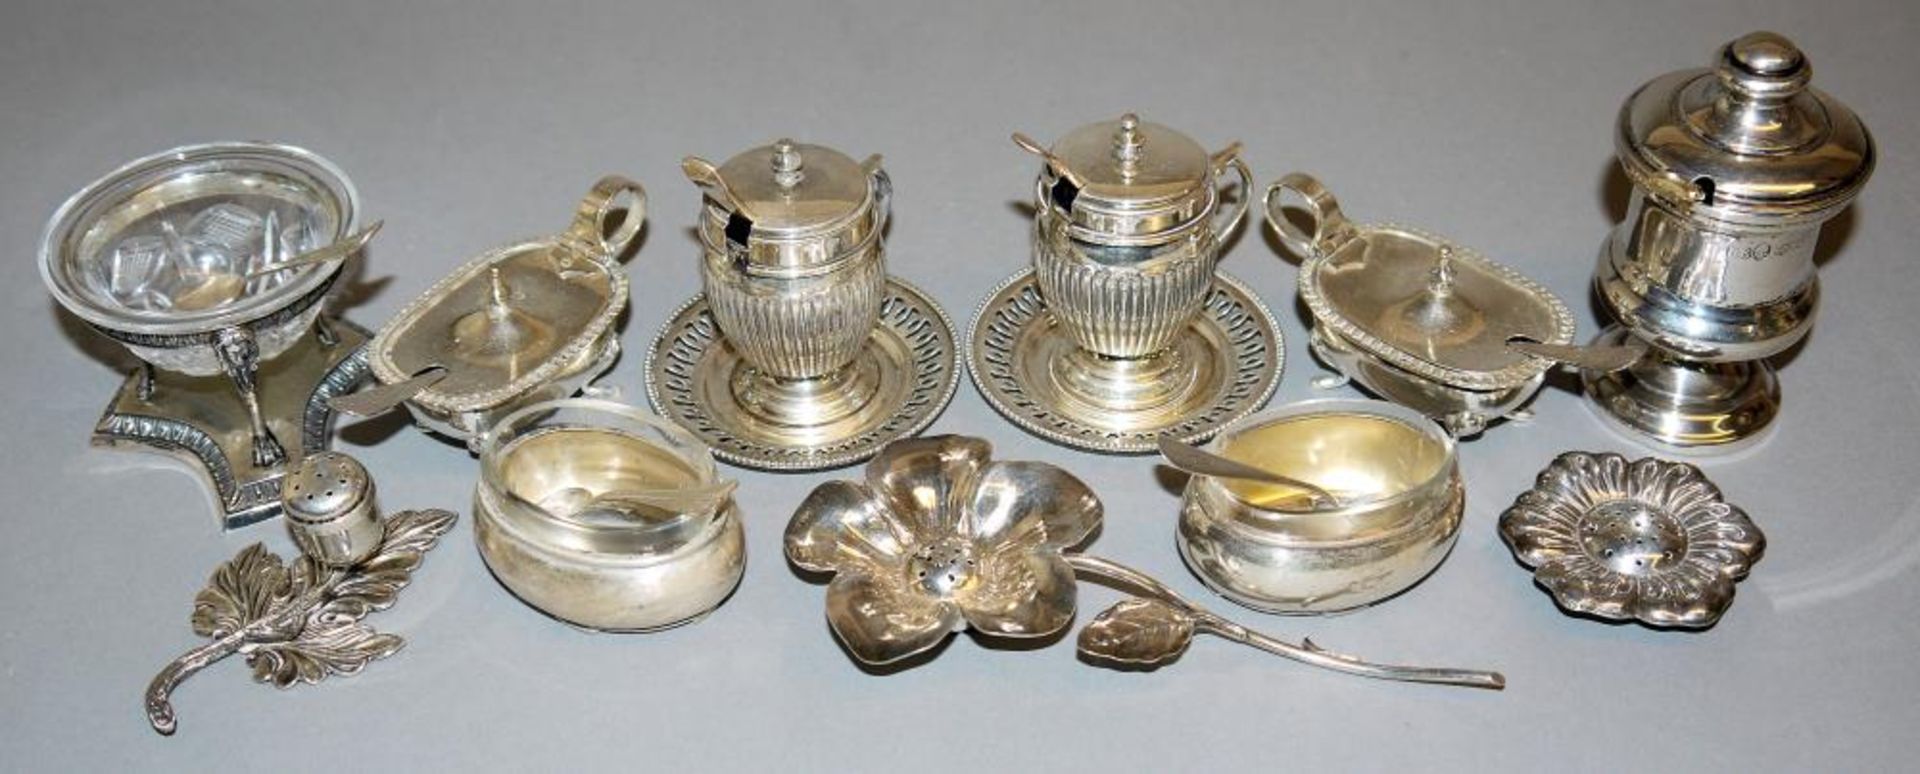 Elf Gewürzbehälter in Silber, ca. 1900-1950 Acht Salièren oder Senftöpfchen mit Löffeln sowie drei